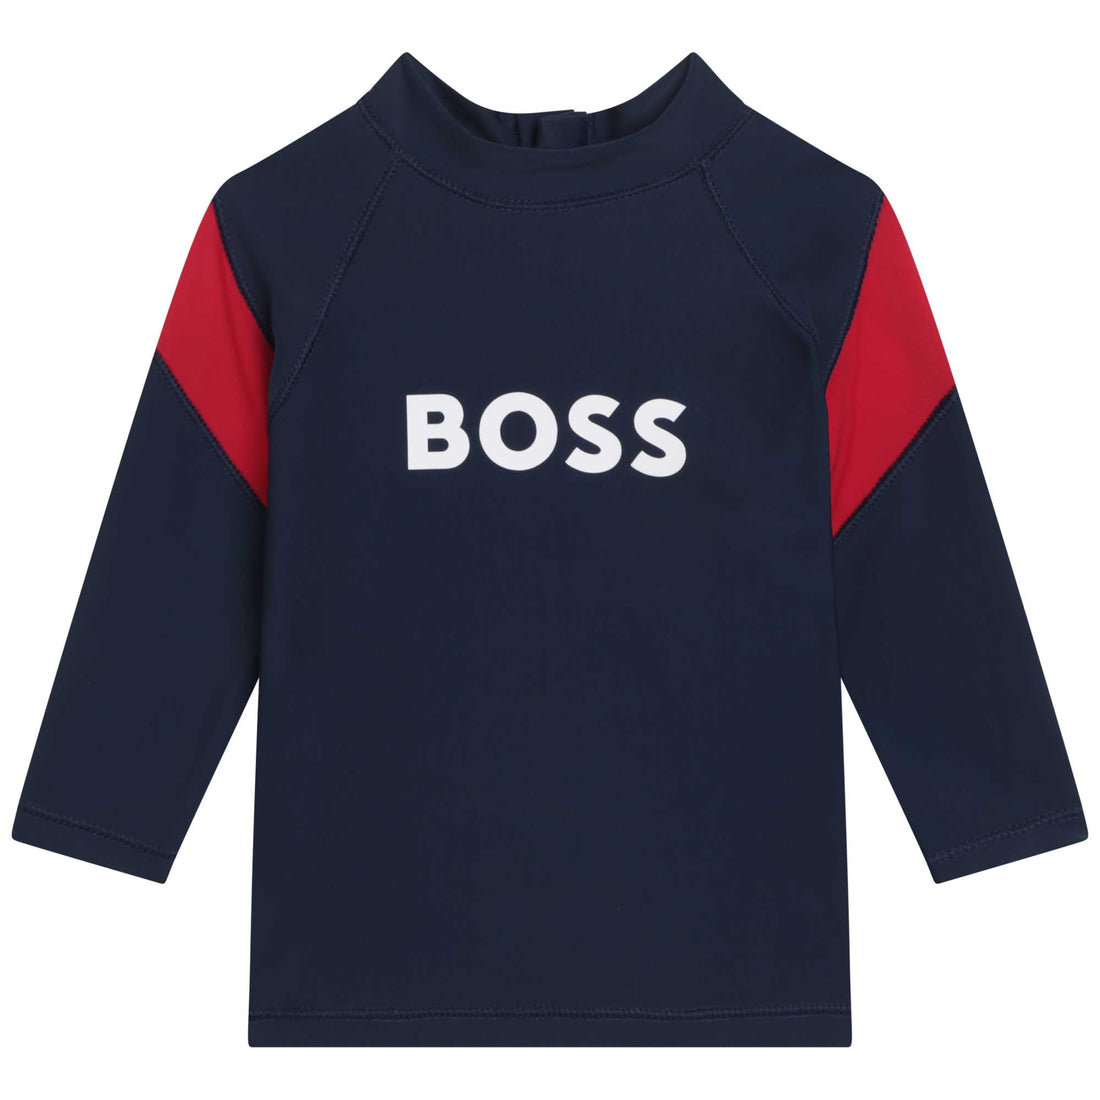 Hugo Boss T-Shirt Style: J05A16